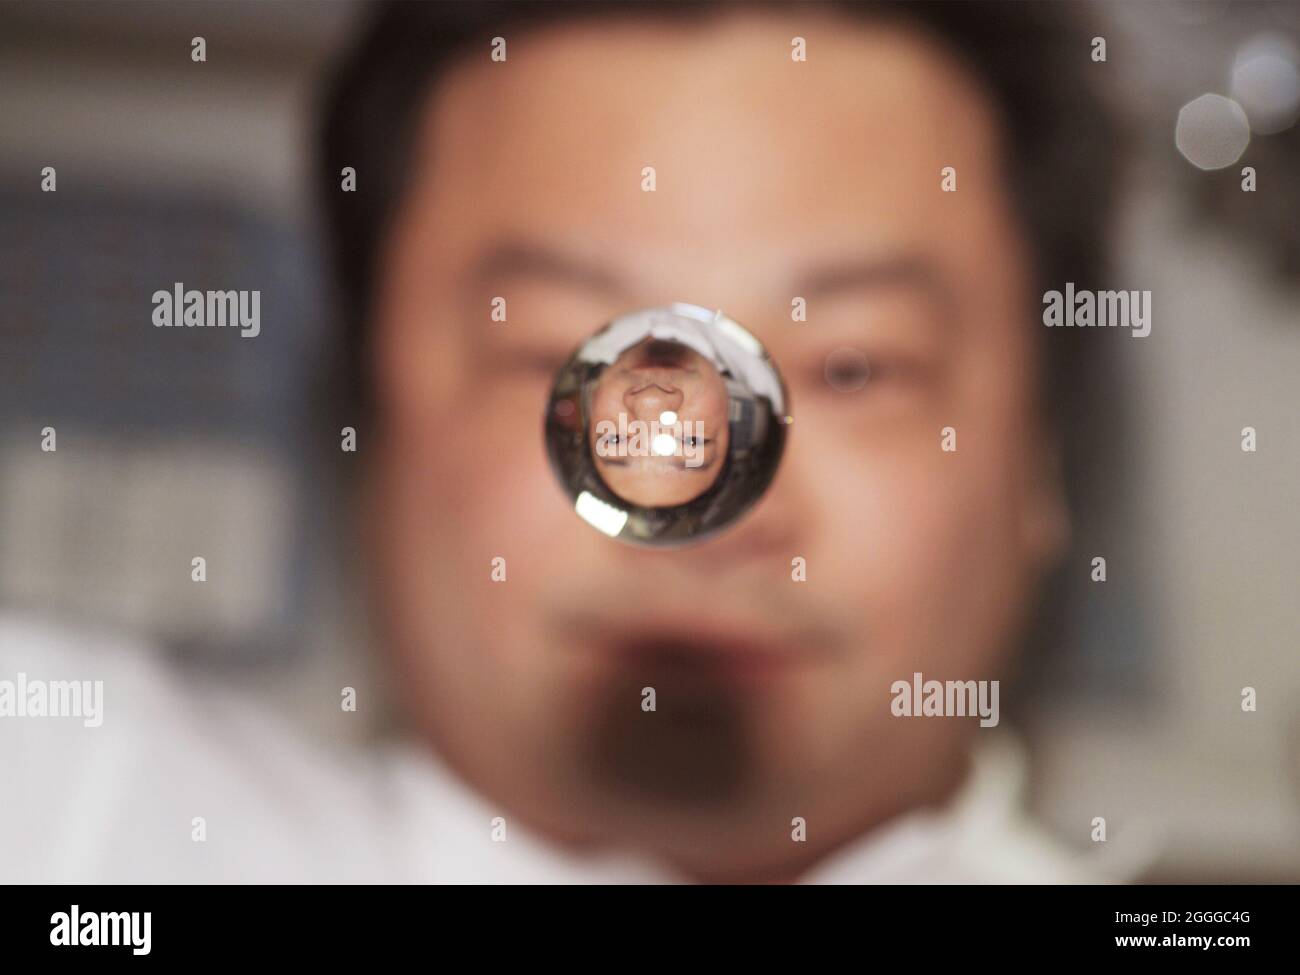 Image Infrate du commandant Leroy Chiao alors qu'il regarde une bulle d'eau à bord de l'ISS, NASA. Banque D'Images